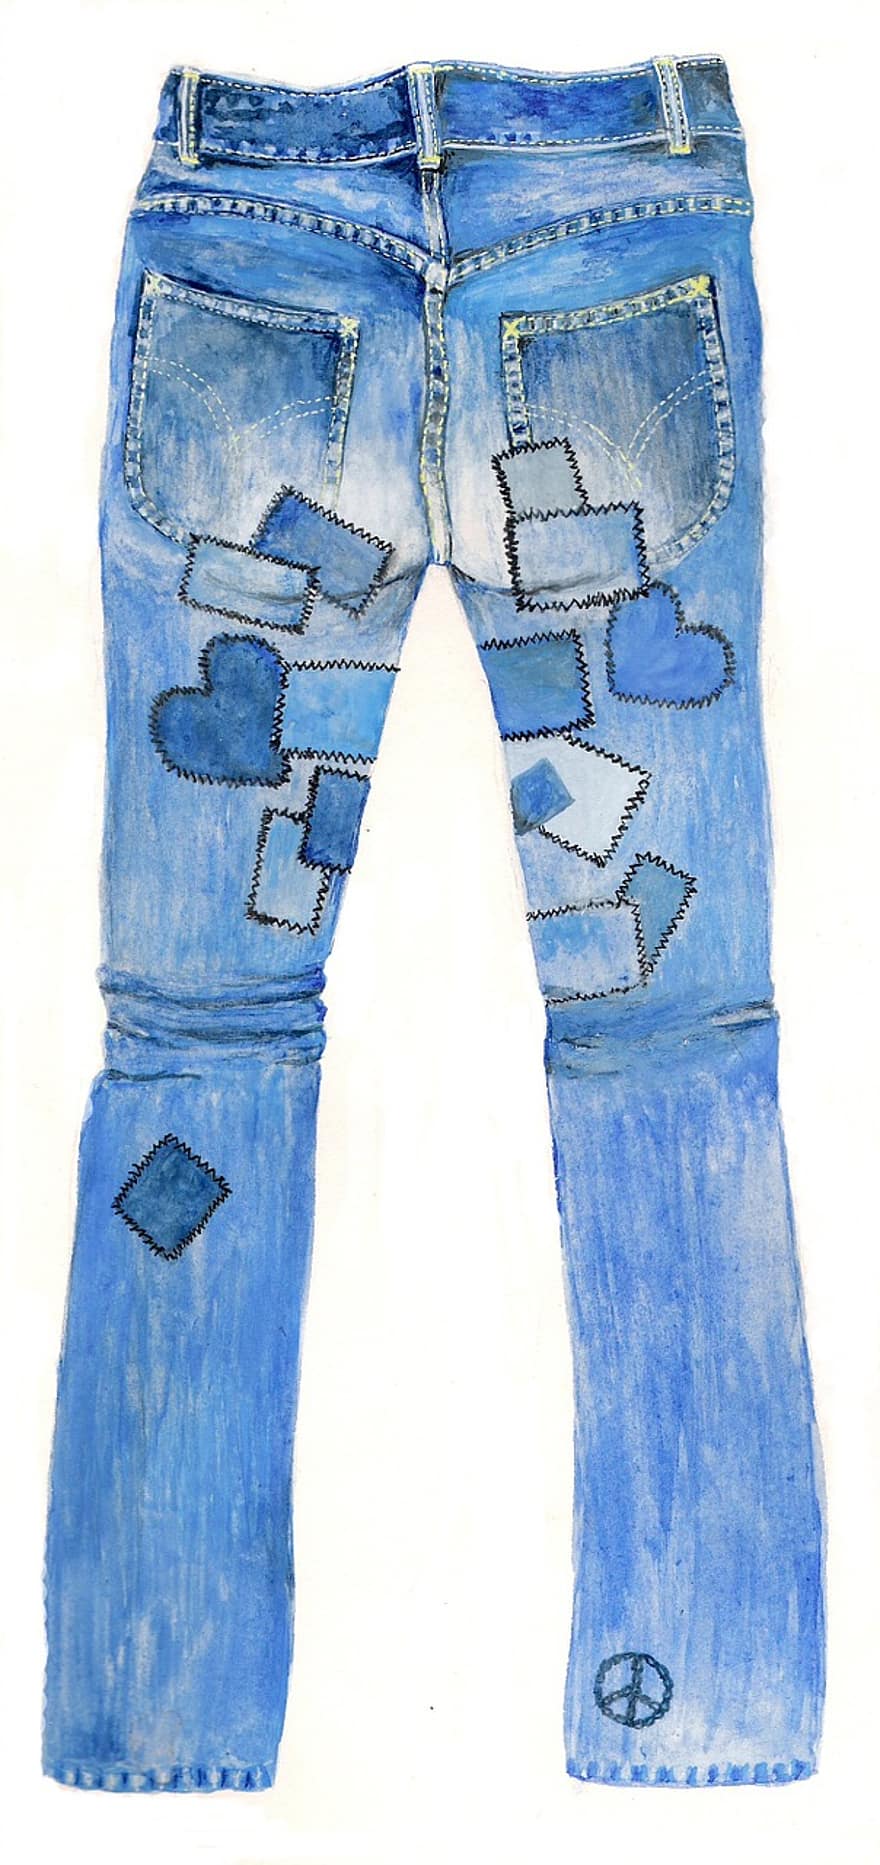 jeans, calça, jeans azul